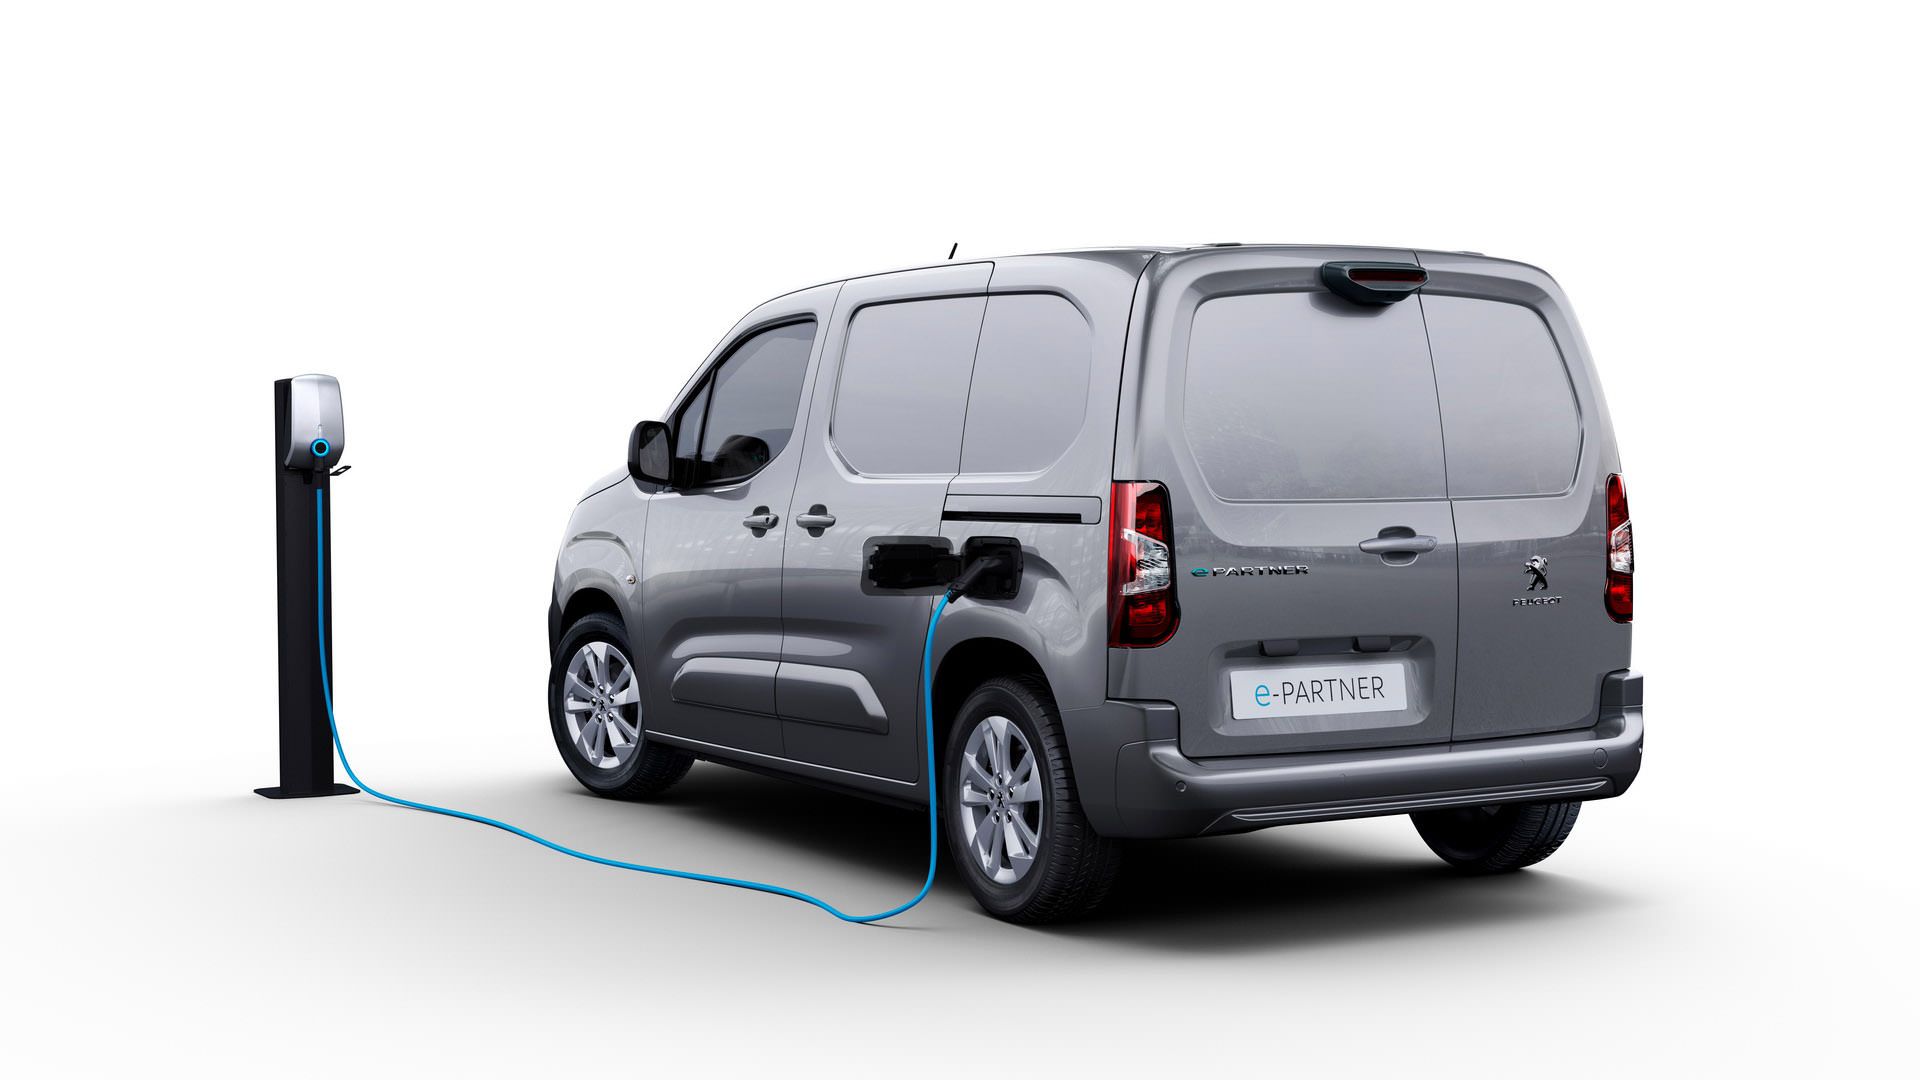 مرجع متخصصين ايران نماي عقب ون برقي پژو اي-پارتنر / 2021 Peugeot e-Partner Electric van خاكستري در حال شارژ 